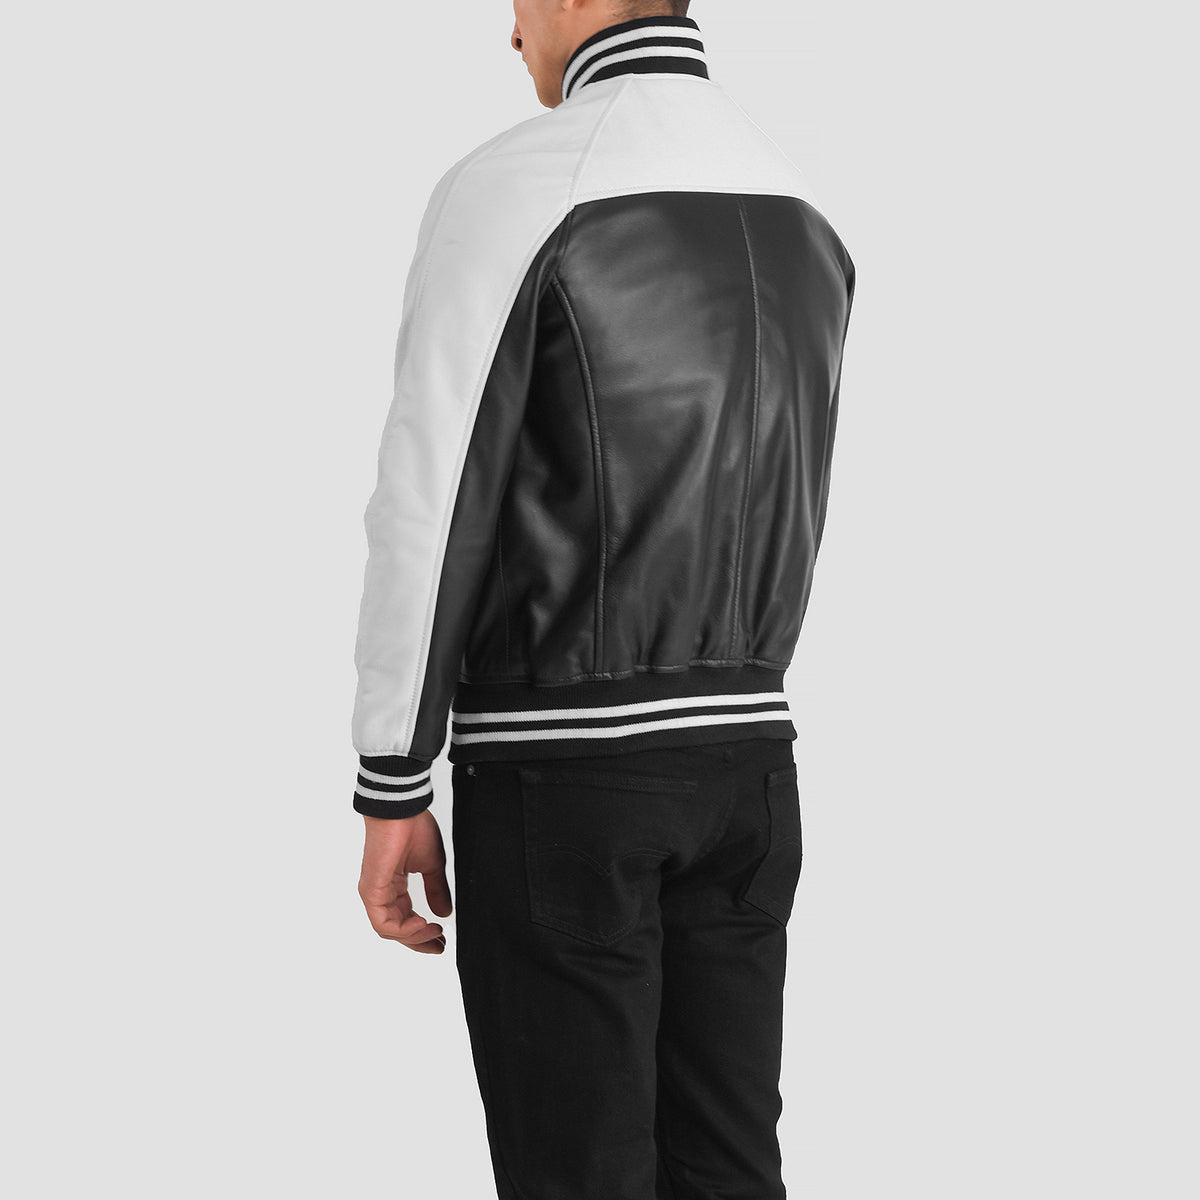 Terrance Black & White Leather Varsity Jacket